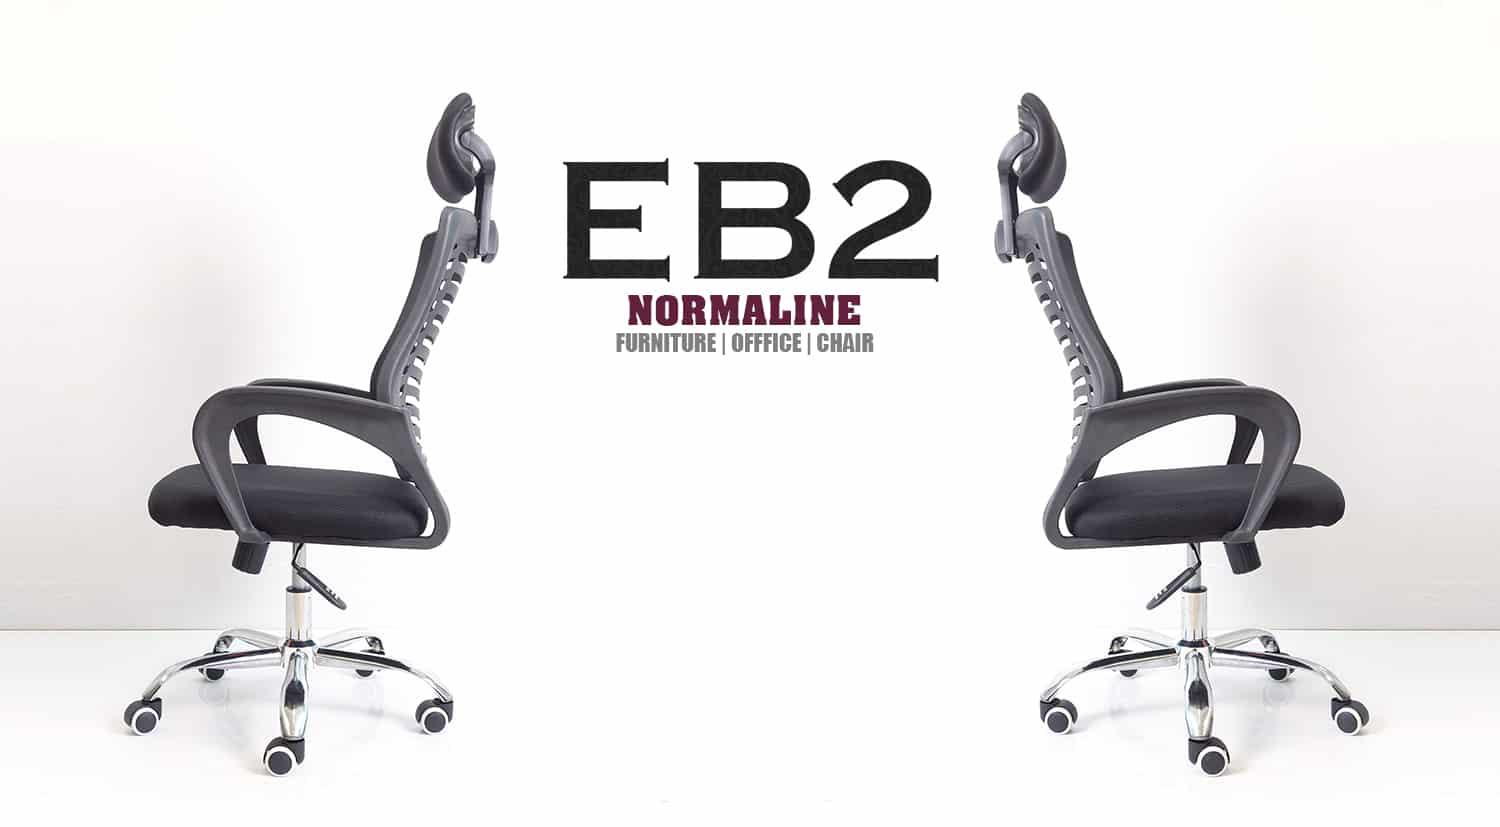 [Cộng đồng mạng chứng nhận] Model EB2 là Ghế Xoay Làm Việc tuyệt vời hiện nay - EB2 Normaline